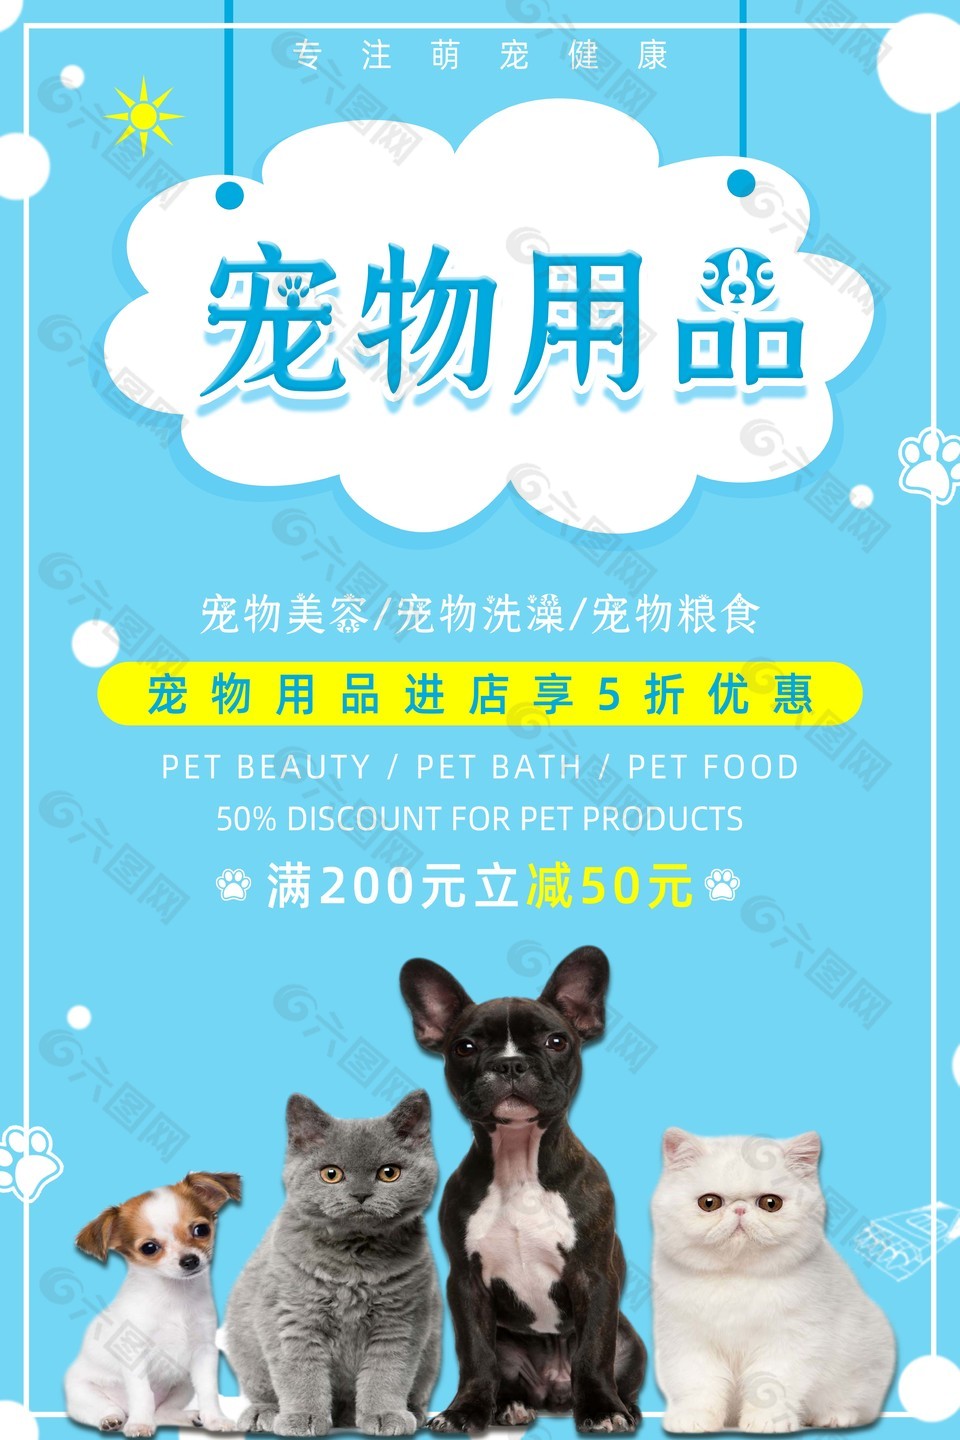 小清新宠物用品店活动促销海报素材下载